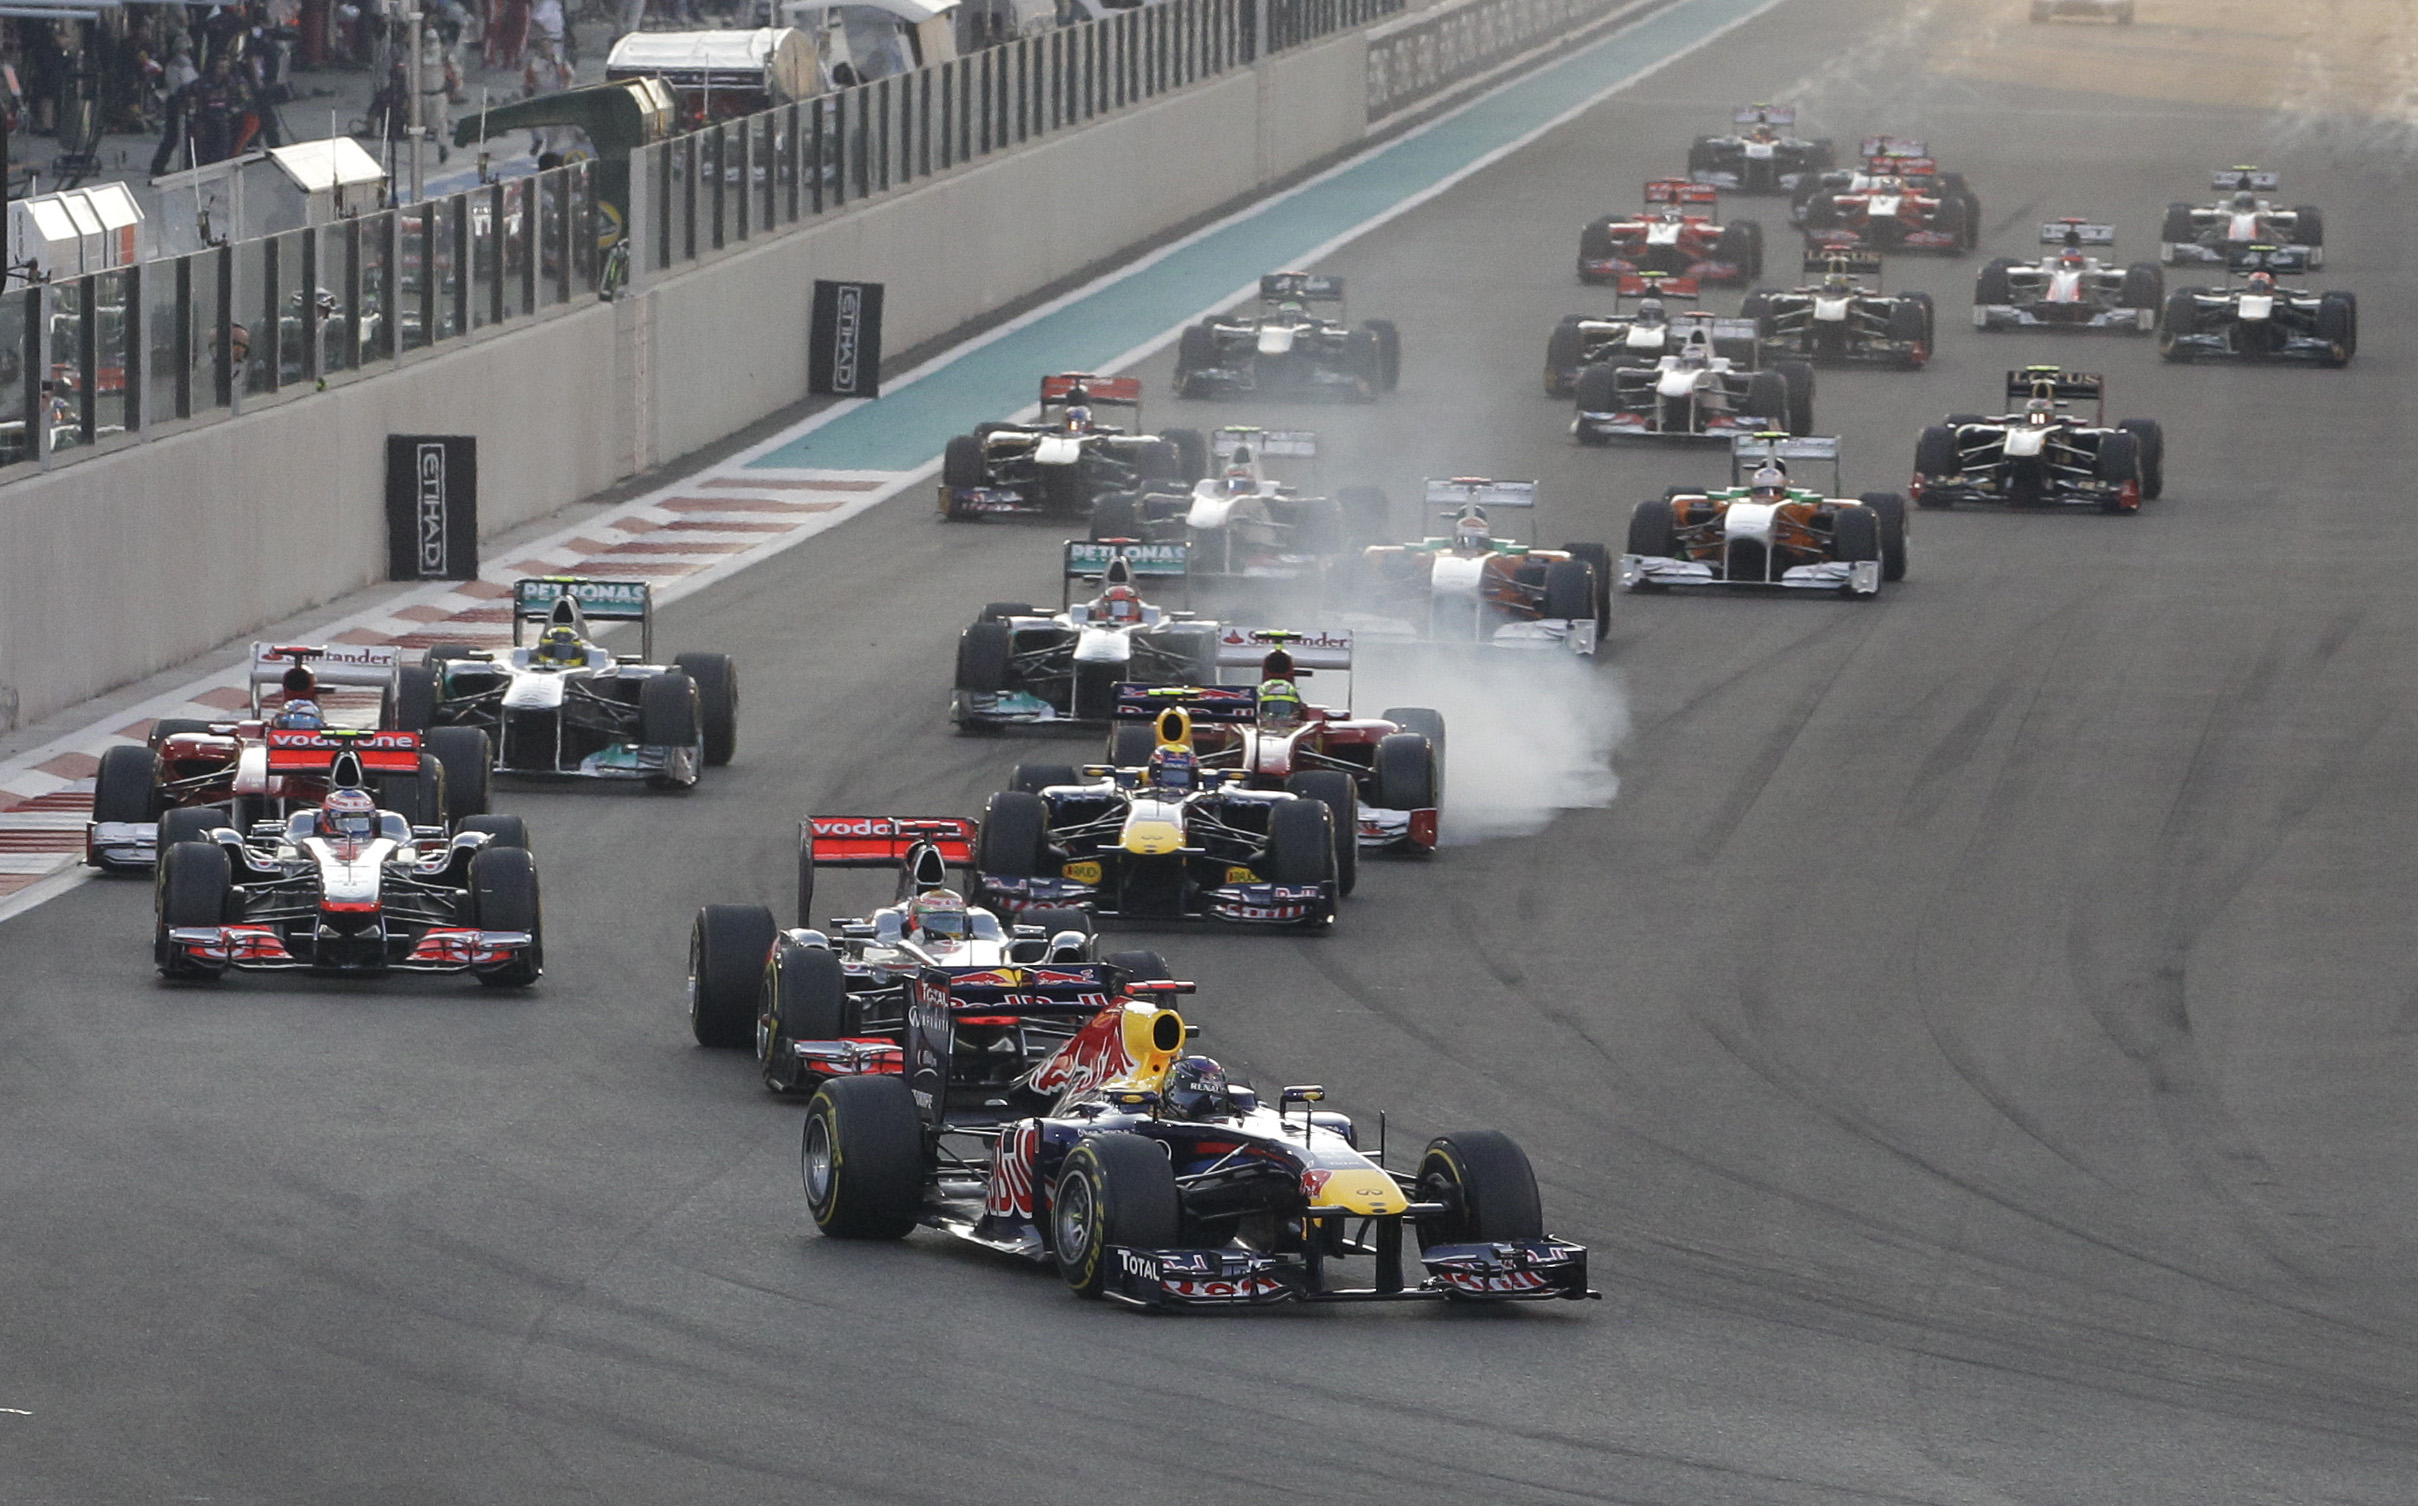 Formel 1, Mark Webber, Nigel Mansell, Jenson Button, Lewis Hamilton, Sebastian Vettel, Fernando Alonso, Red Bull, Abu Dhabi